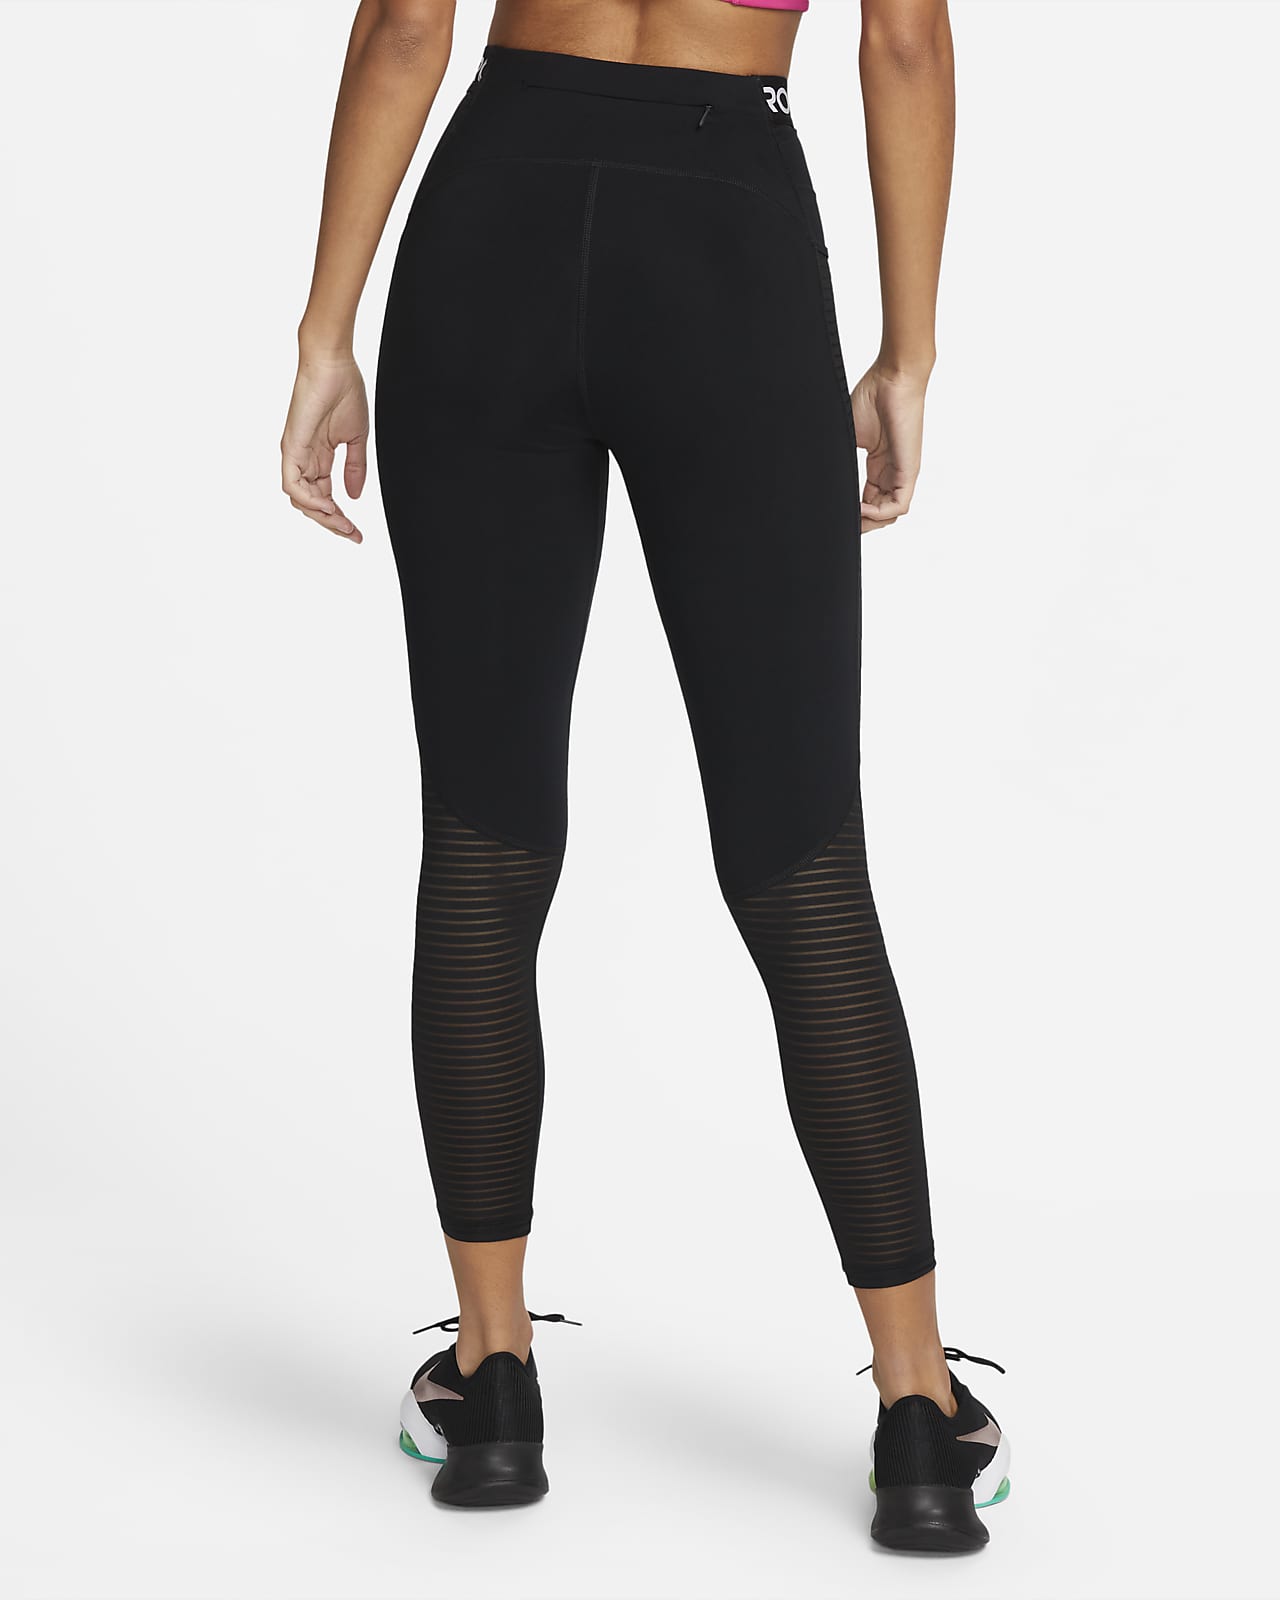 Imposible Consulado paridad Nike Pro Leggings de talle alto con bolsillos - Mujer. Nike ES